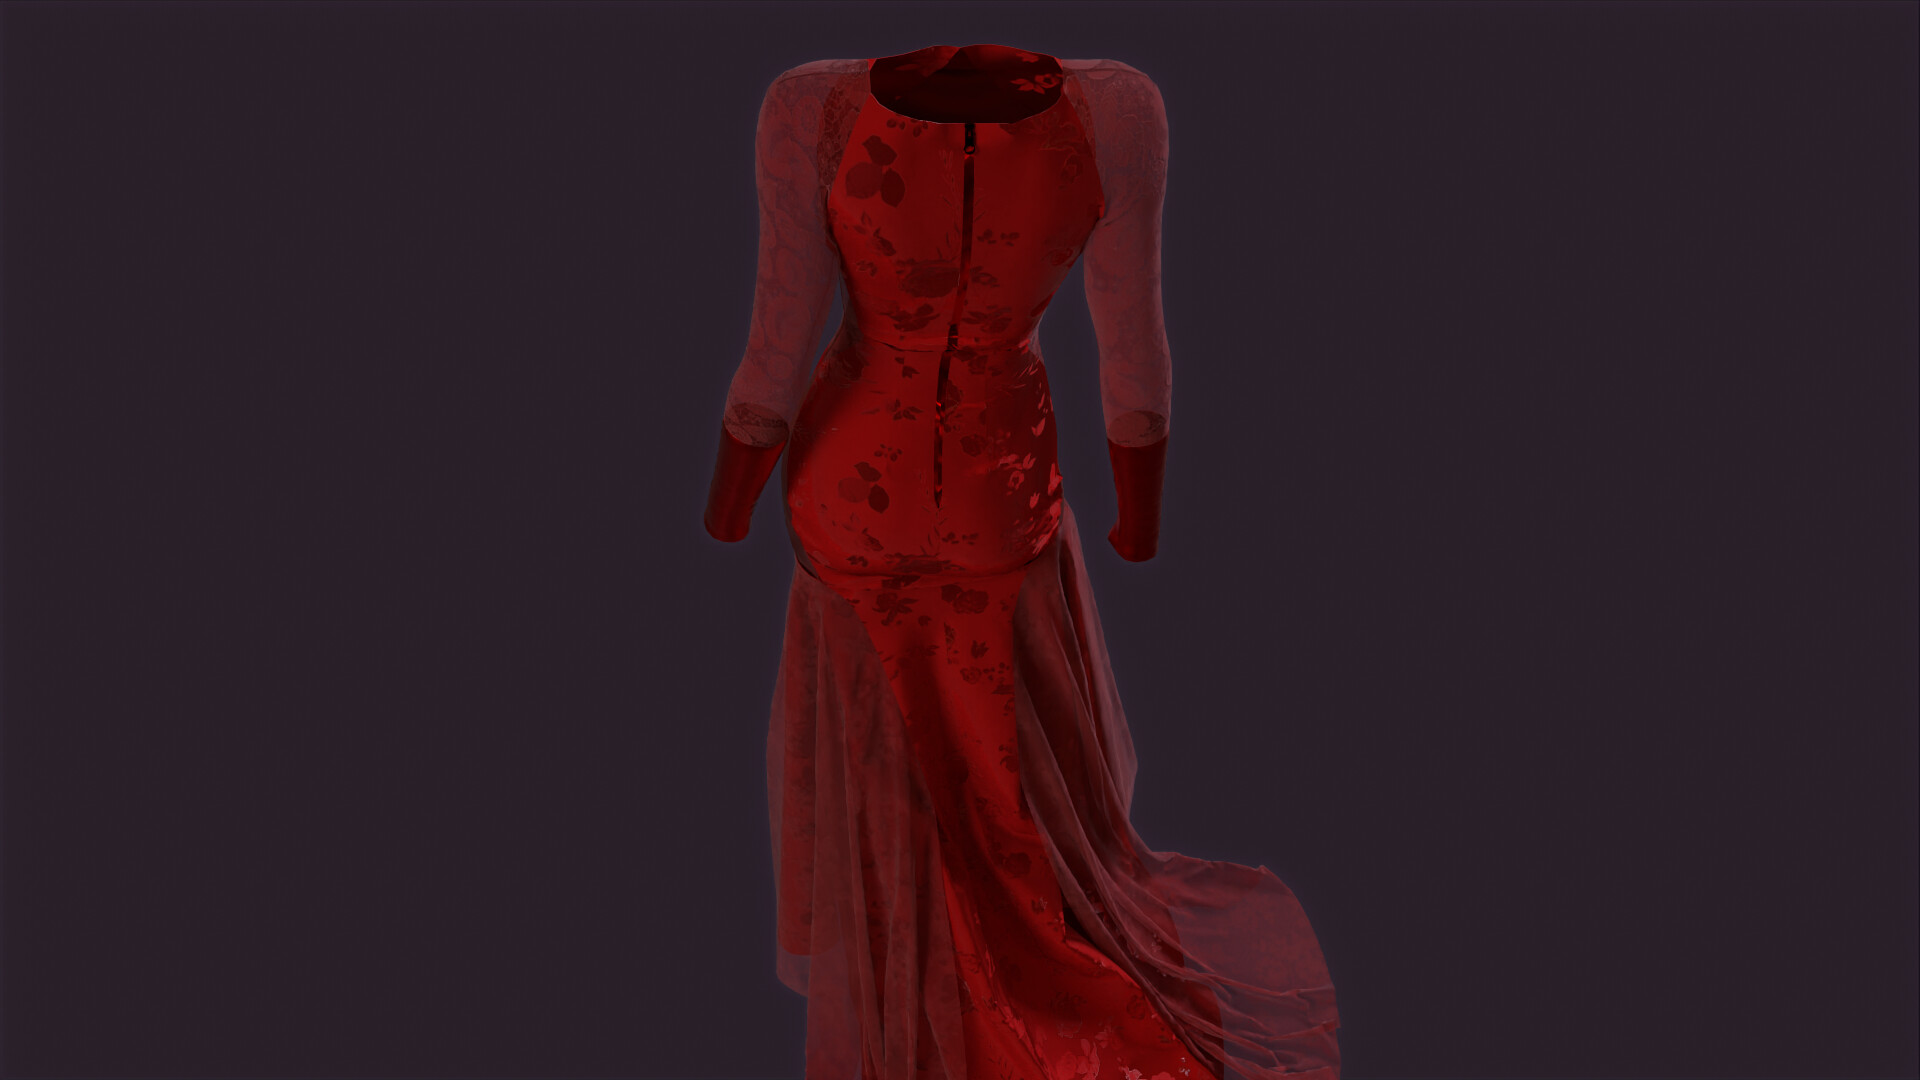 Paul Kelly - Red Dress